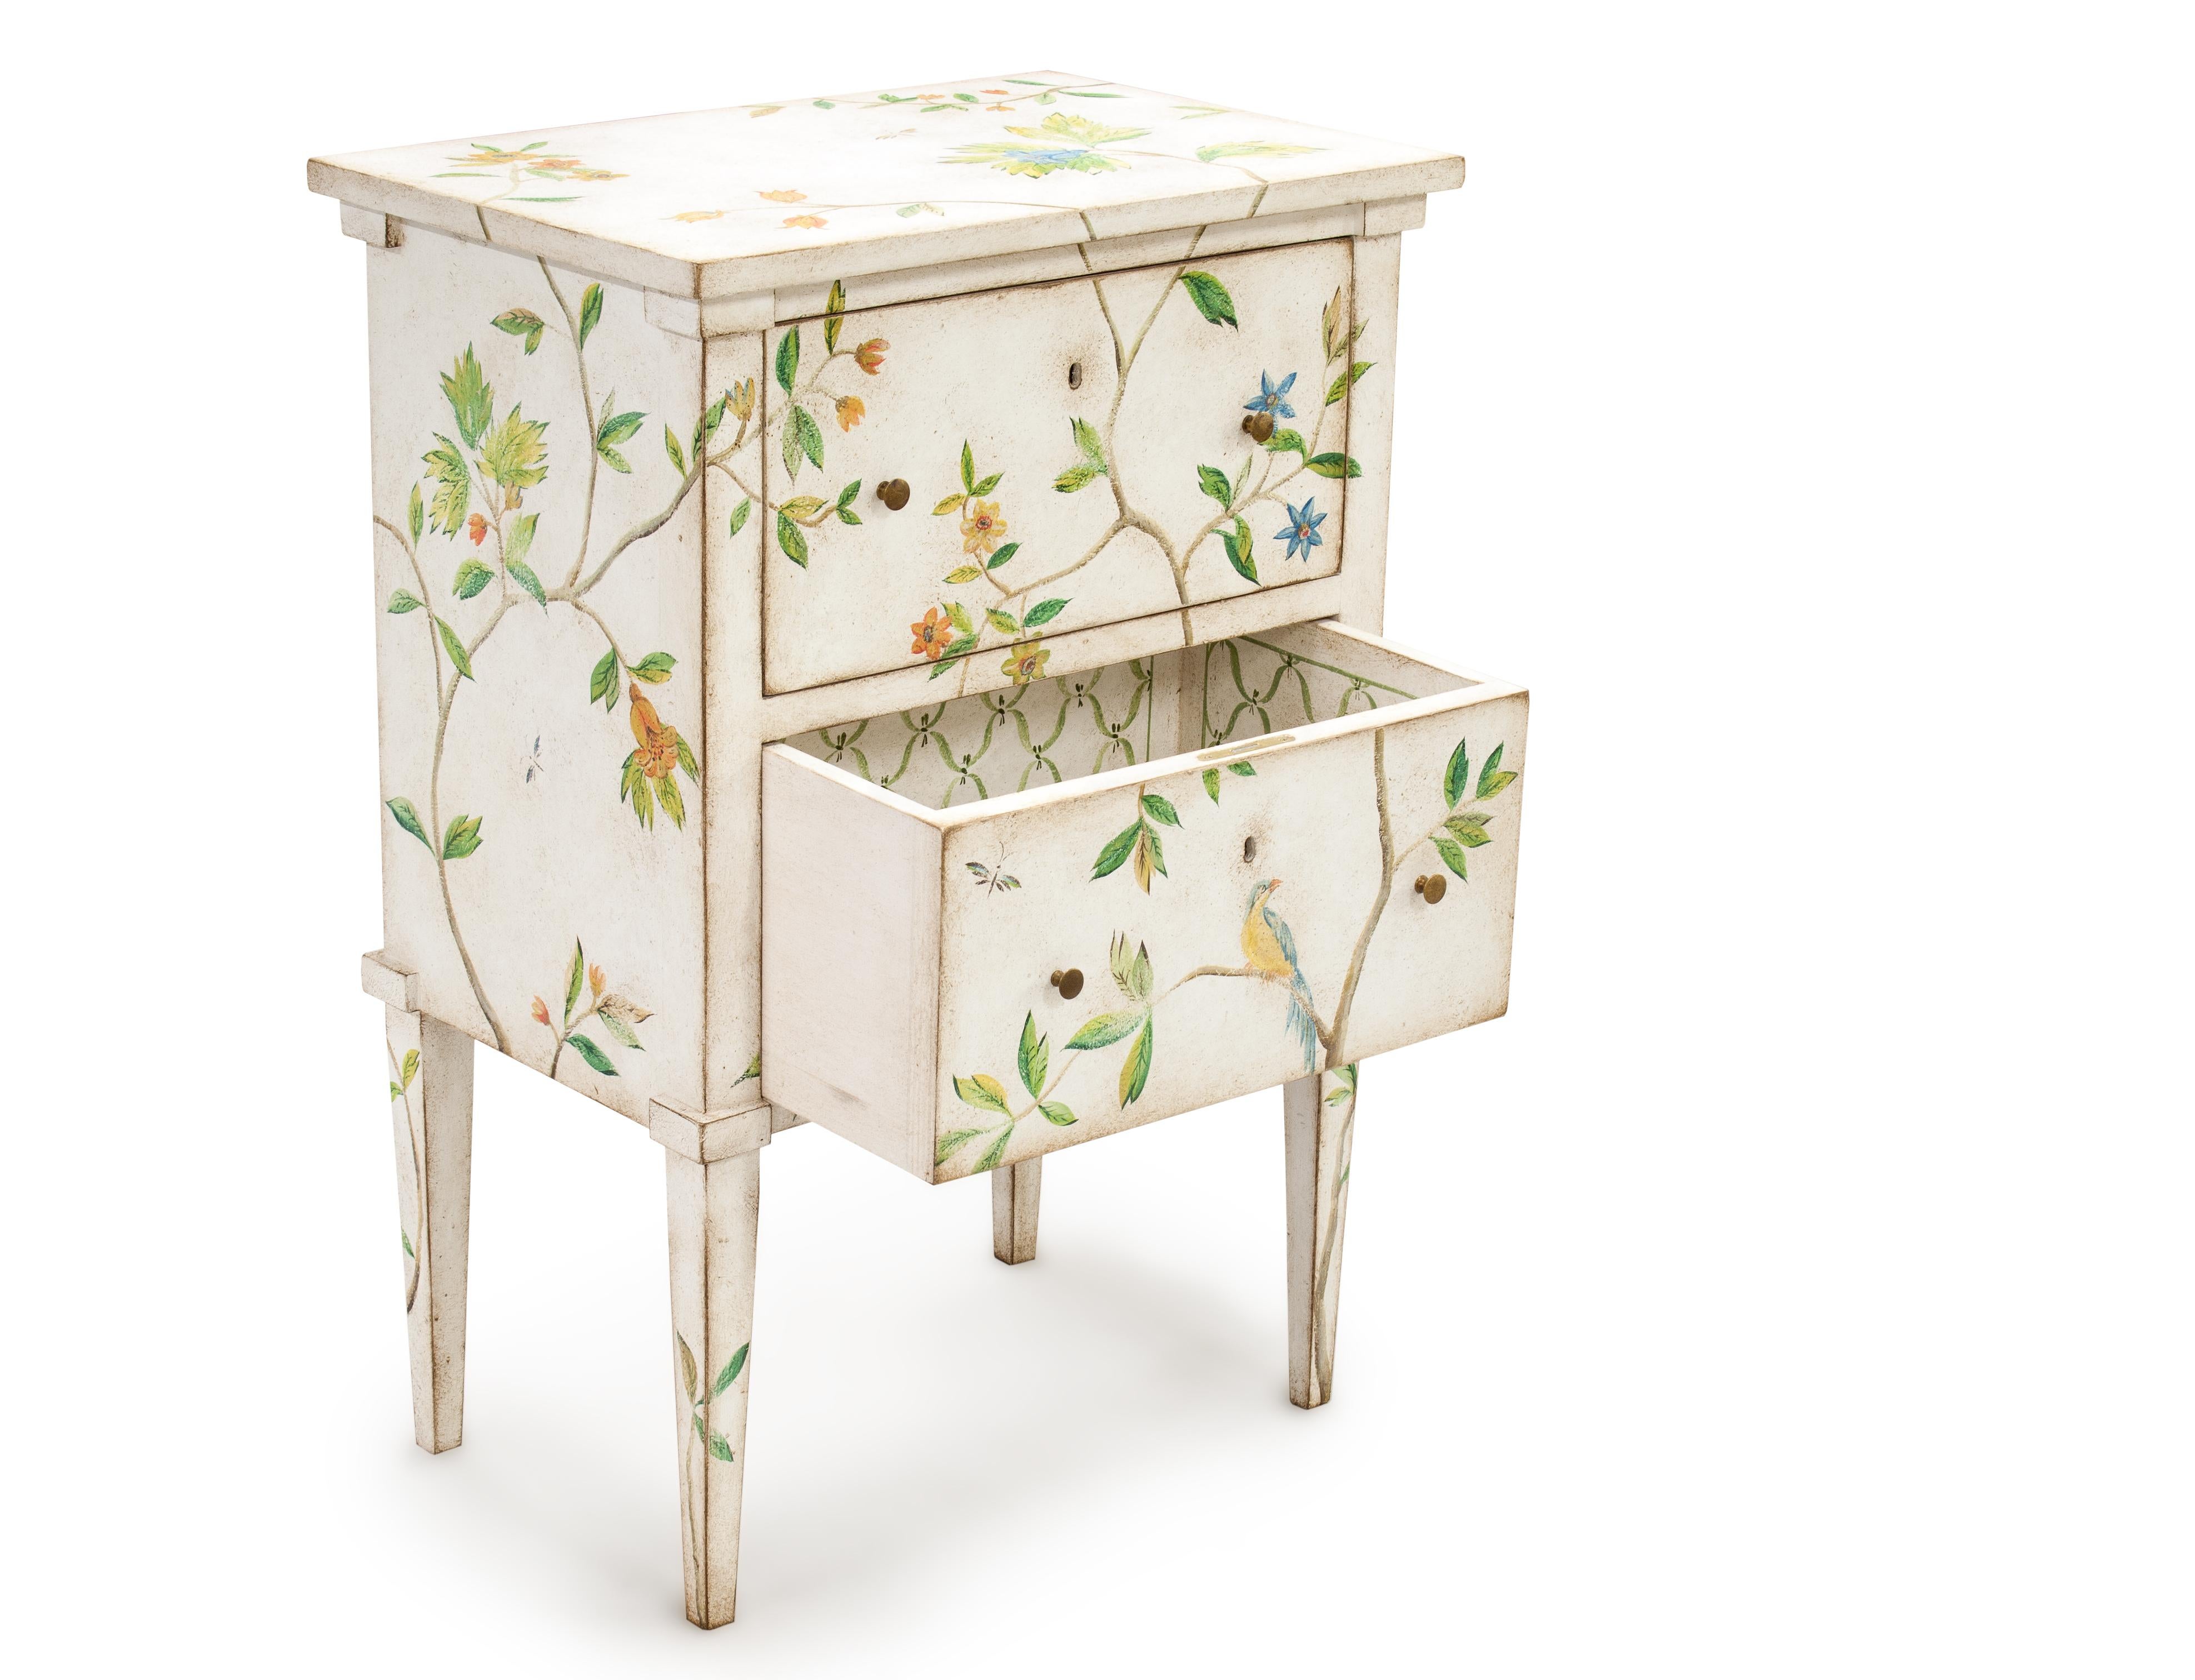 Aus unserer Hand-Painted Furniture Collection freuen wir uns, Ihnen unseren Lombardia Nachttisch vorzustellen.
Ein zeitloser Rahmen mit soliden, modernen Linien, der mit unserem skurrilen Laubdekor mit blühenden Blumen und sitzenden Vögeln in einer